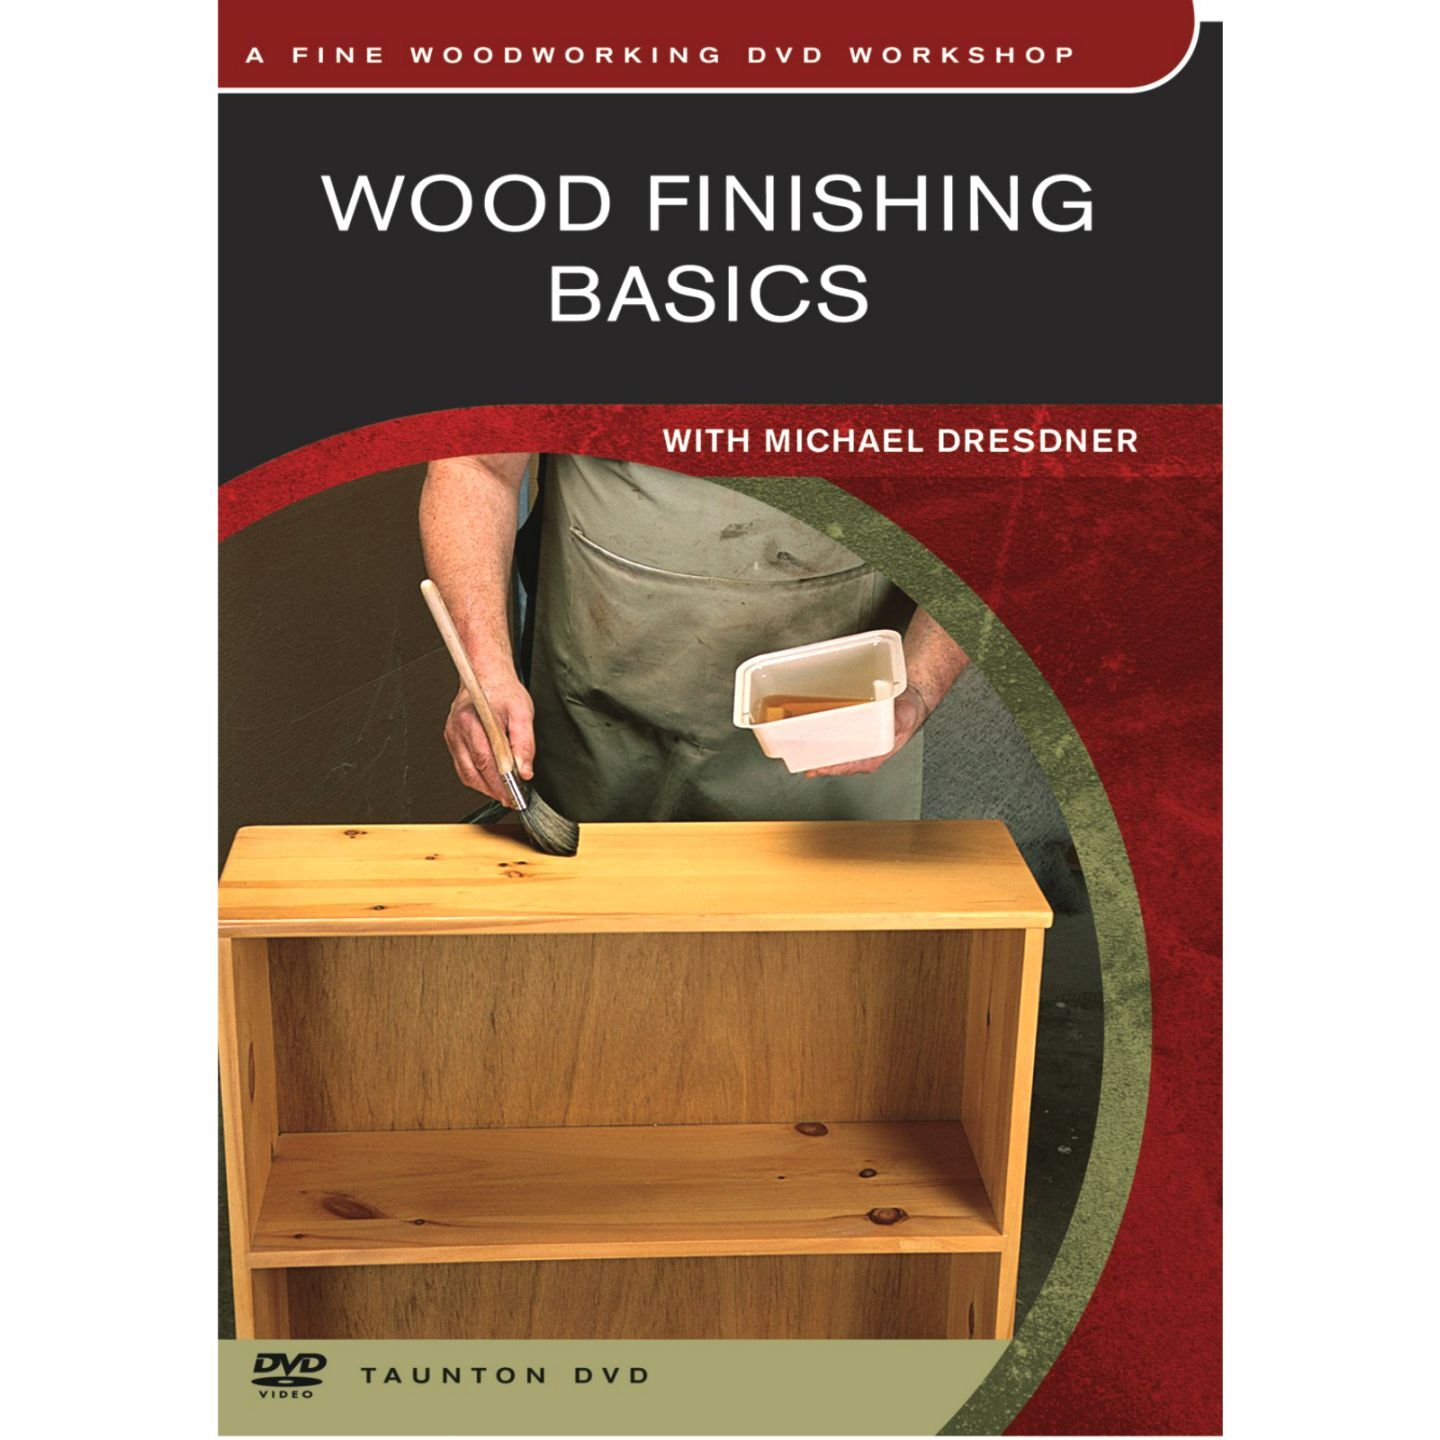 Wood Finishing Basics - DVD